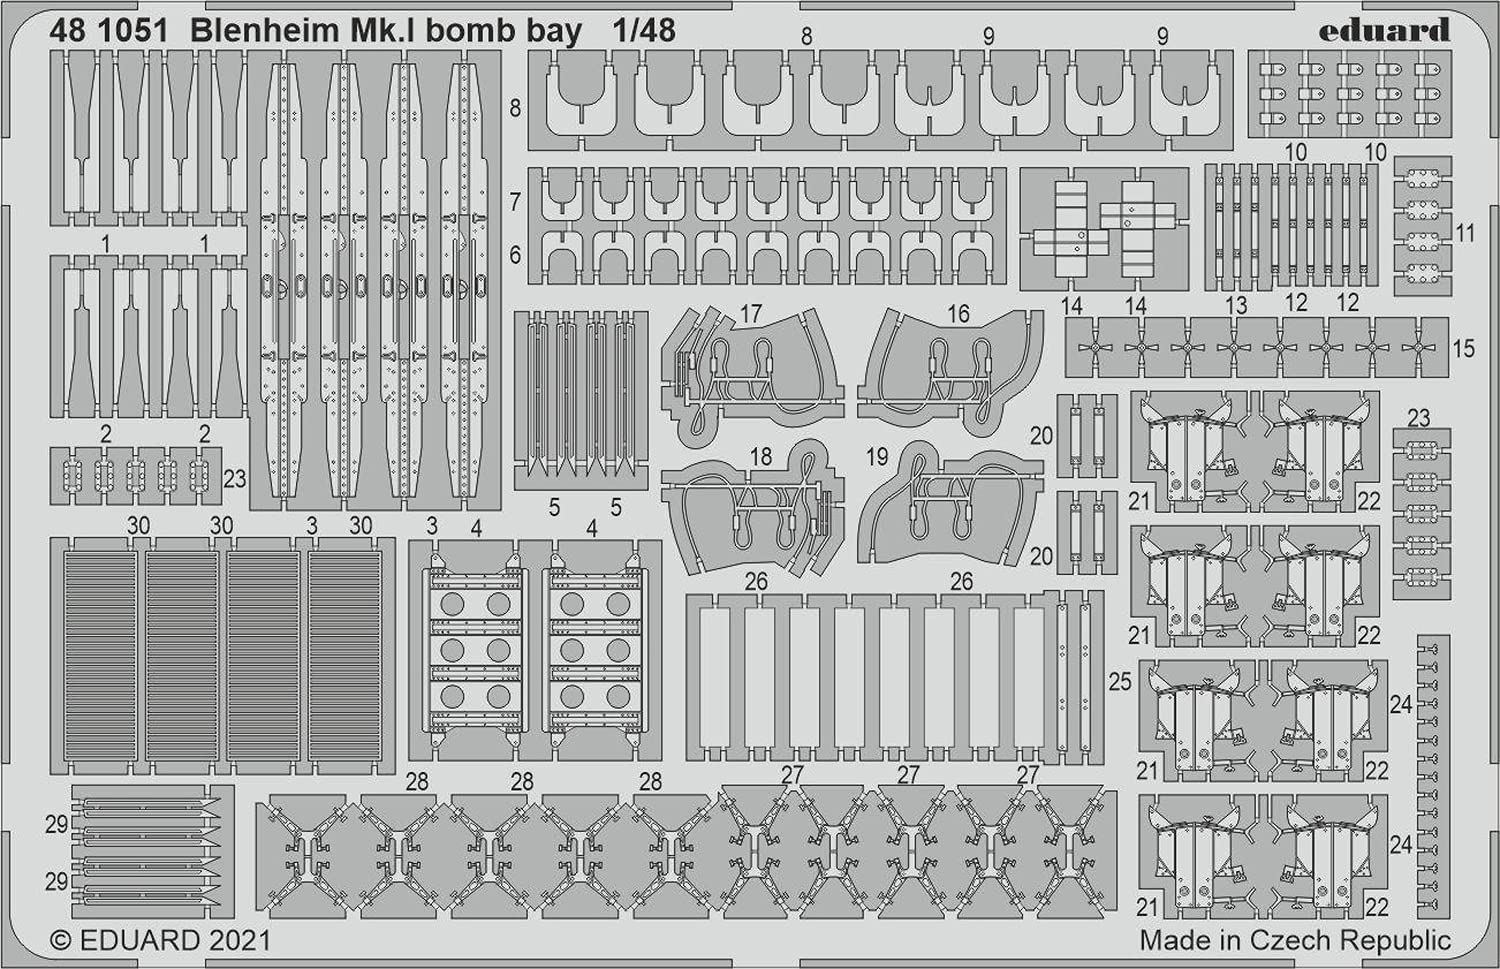 エデュアルド 1/48 ブレニム Mk.1 爆弾槽 エッチングパーツ (エアフィックス用) プラモデル用パーツ EDU481051